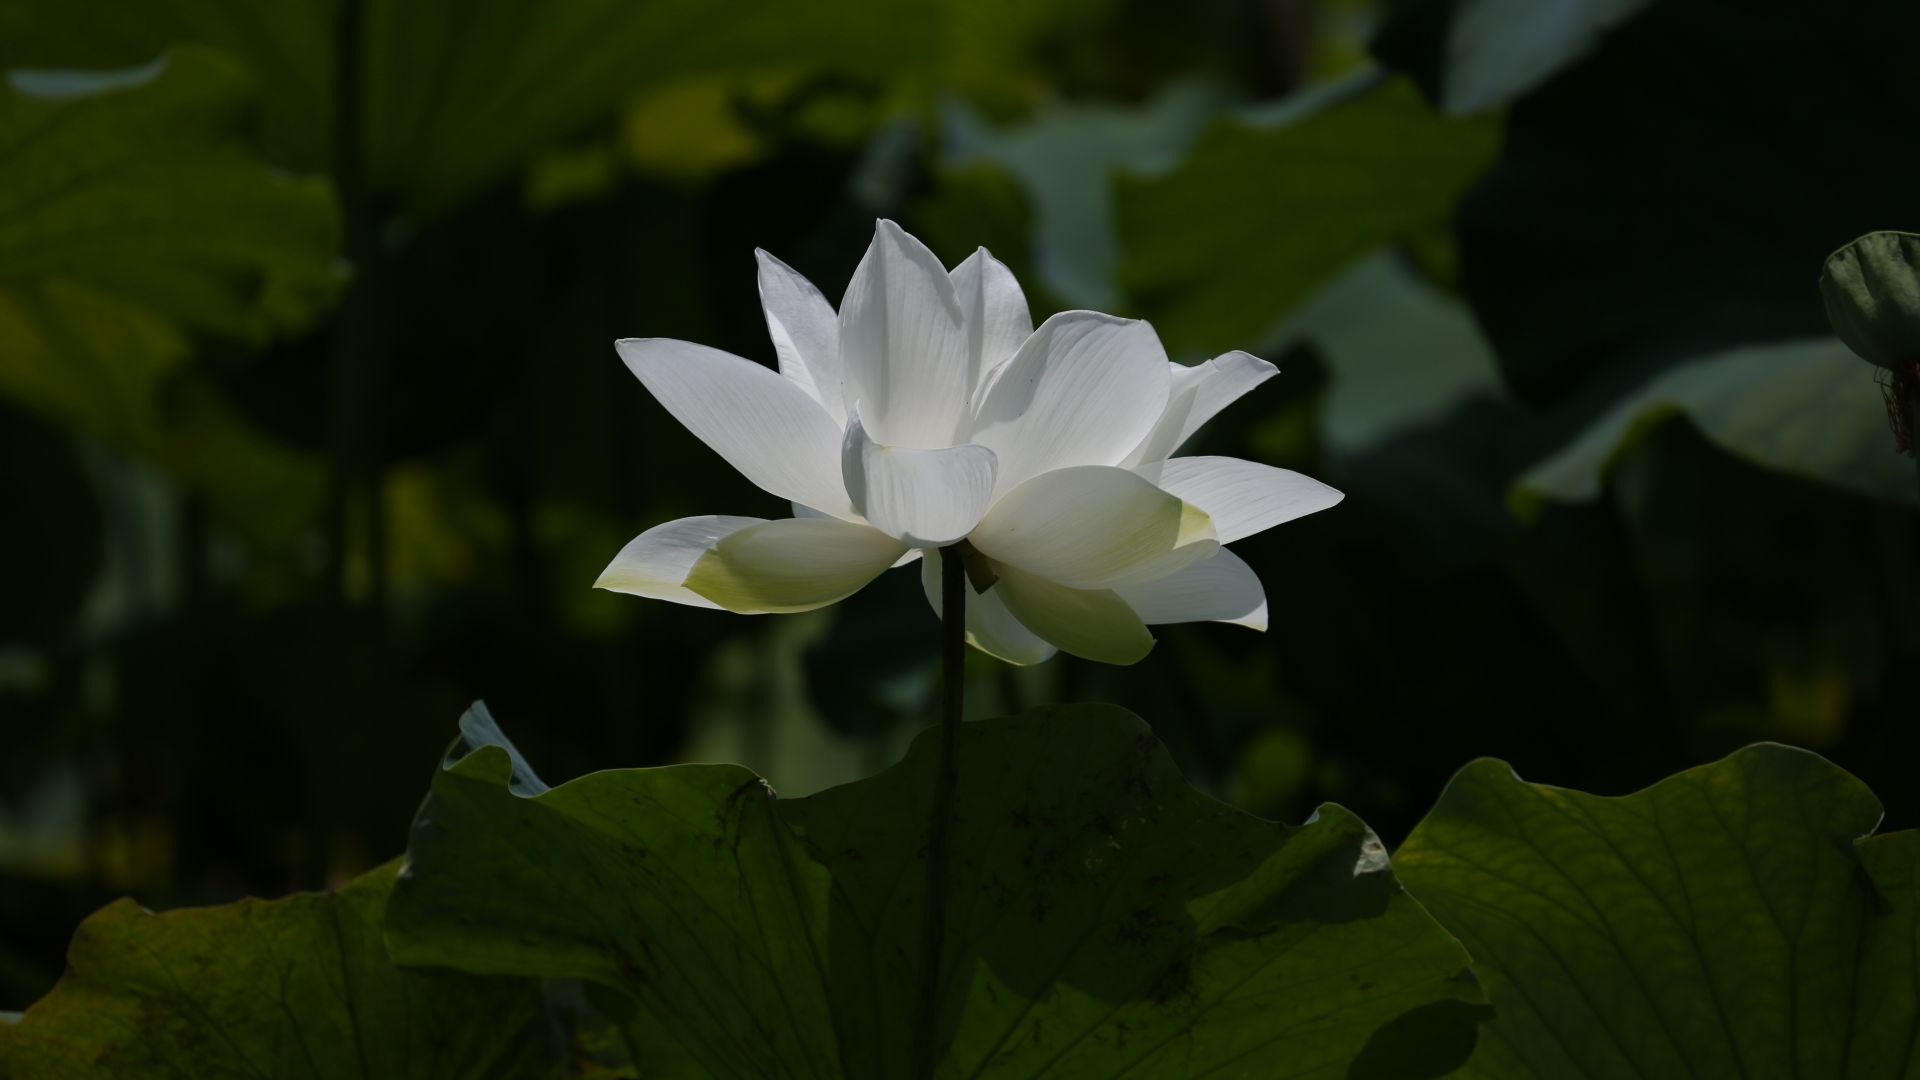 Hoa sen trắng tinh khôi như một tuyệt tác của thiên nhiên. Hãy ngắm nhìn ảnh hoa sen trắng để thưởng thức sự đẹp độc đáo và thanh thoát của một loài hoa đặc biệt này. 